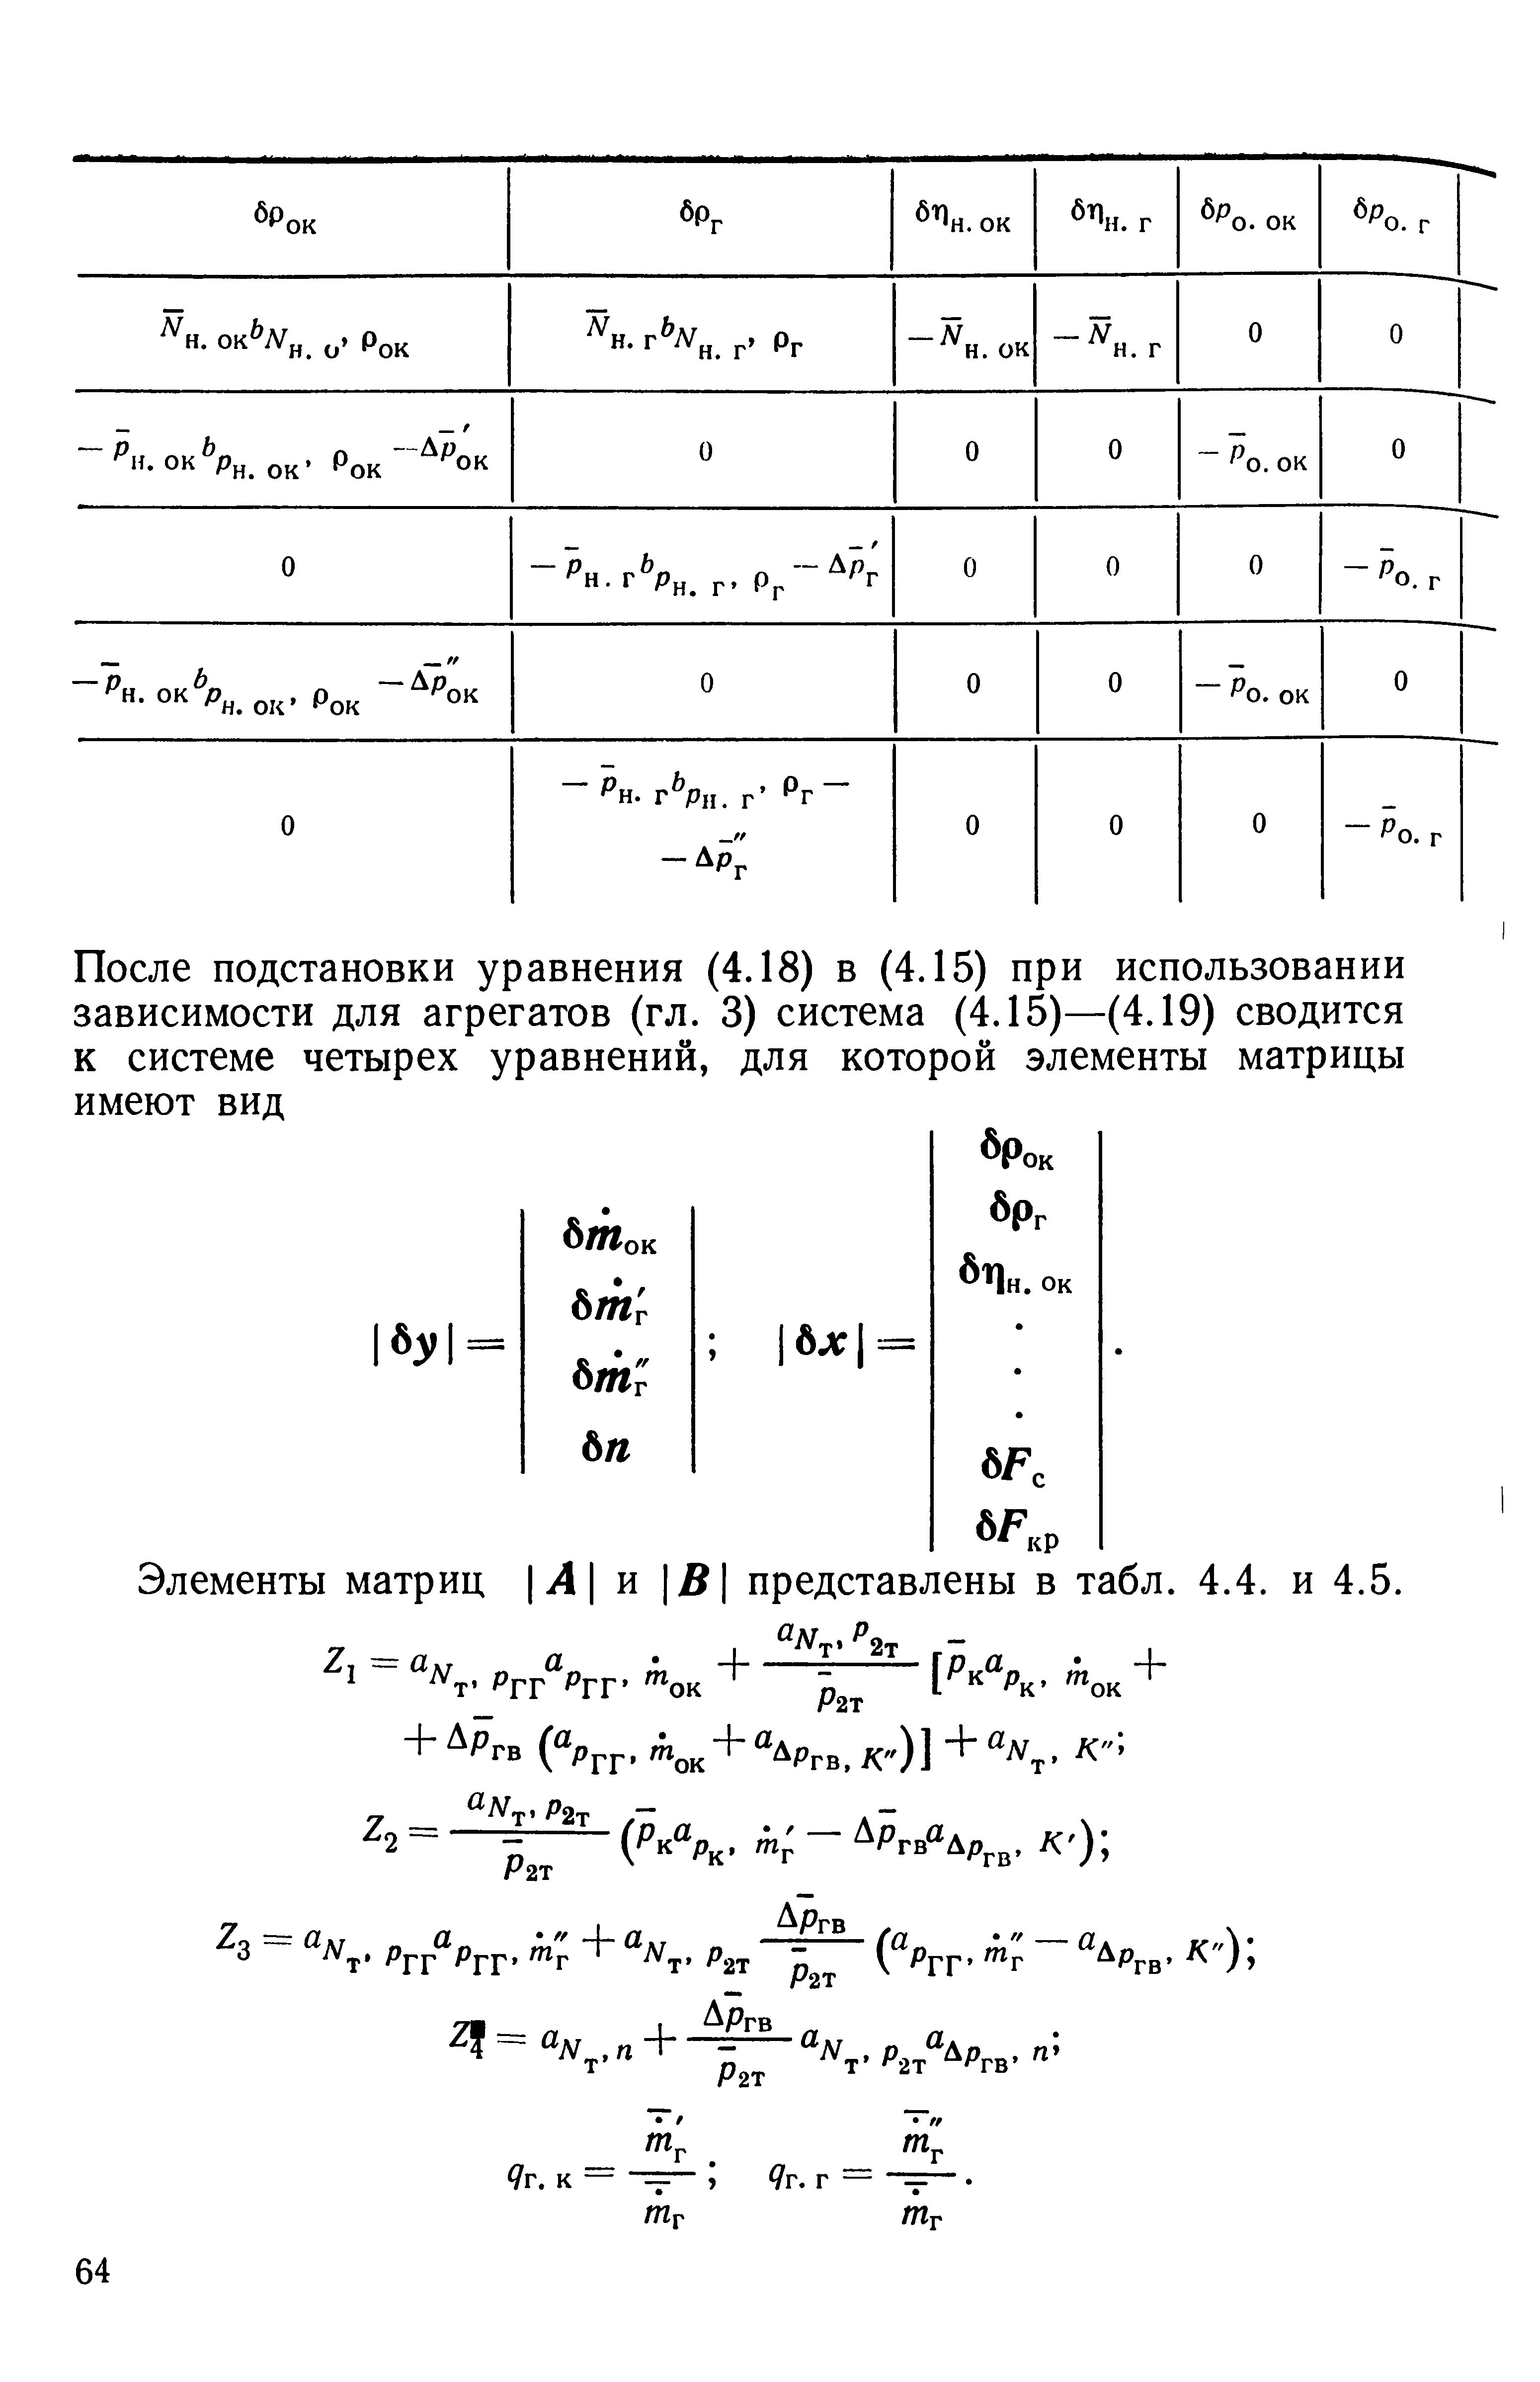 Элементы матриц Л и 5 представлены в табл. 4.4. и 4.5.
